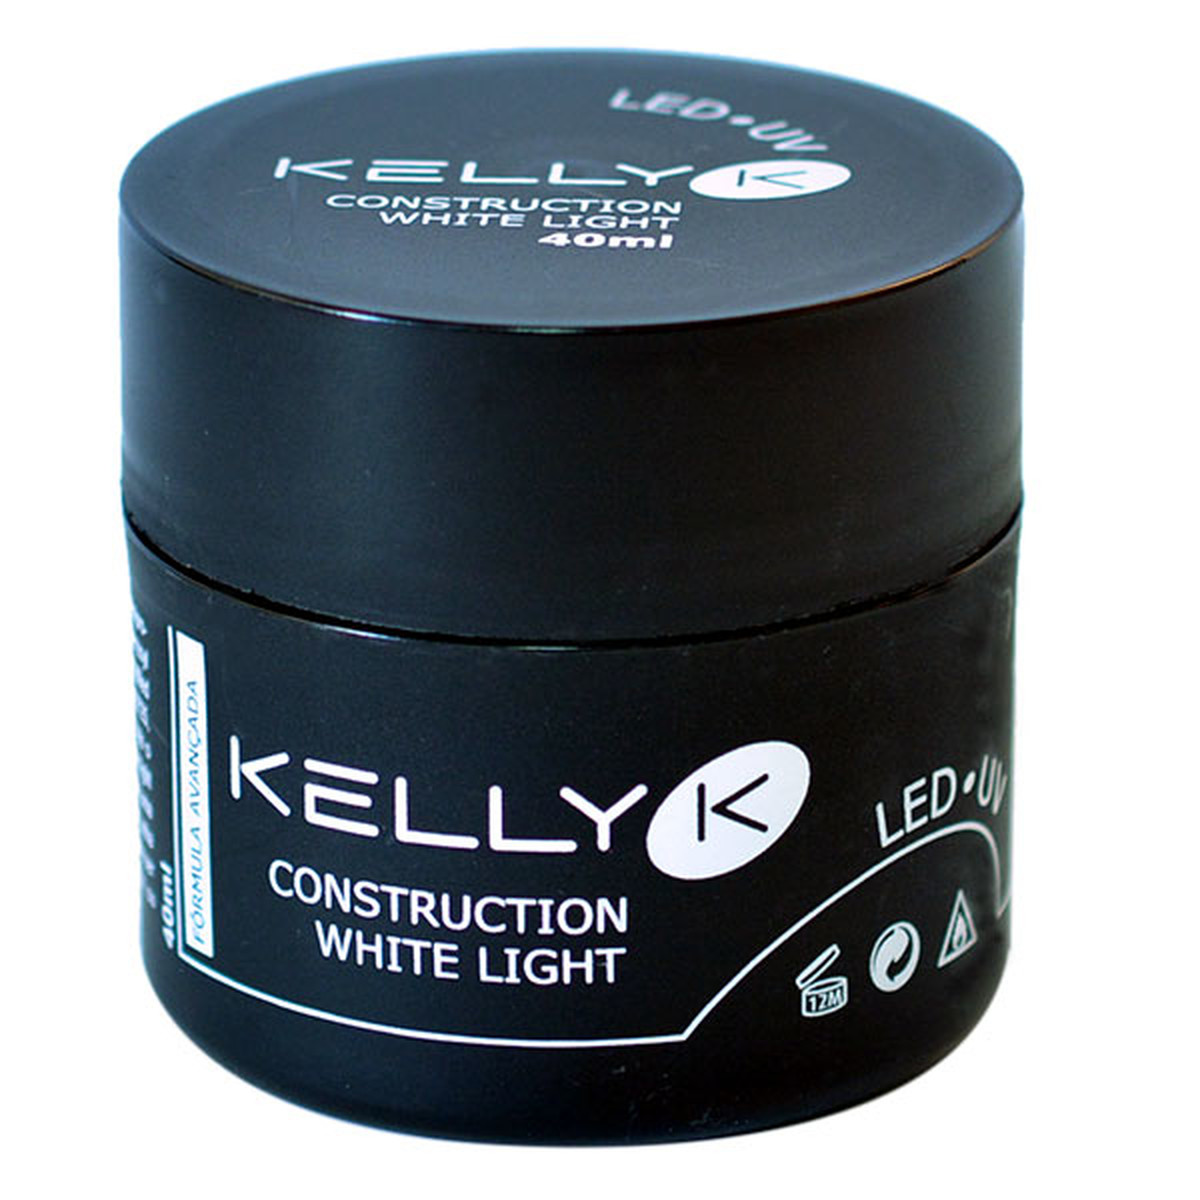 Kelly K Led/Uv Construction White Light 40Ml - 40Ml » Construction...